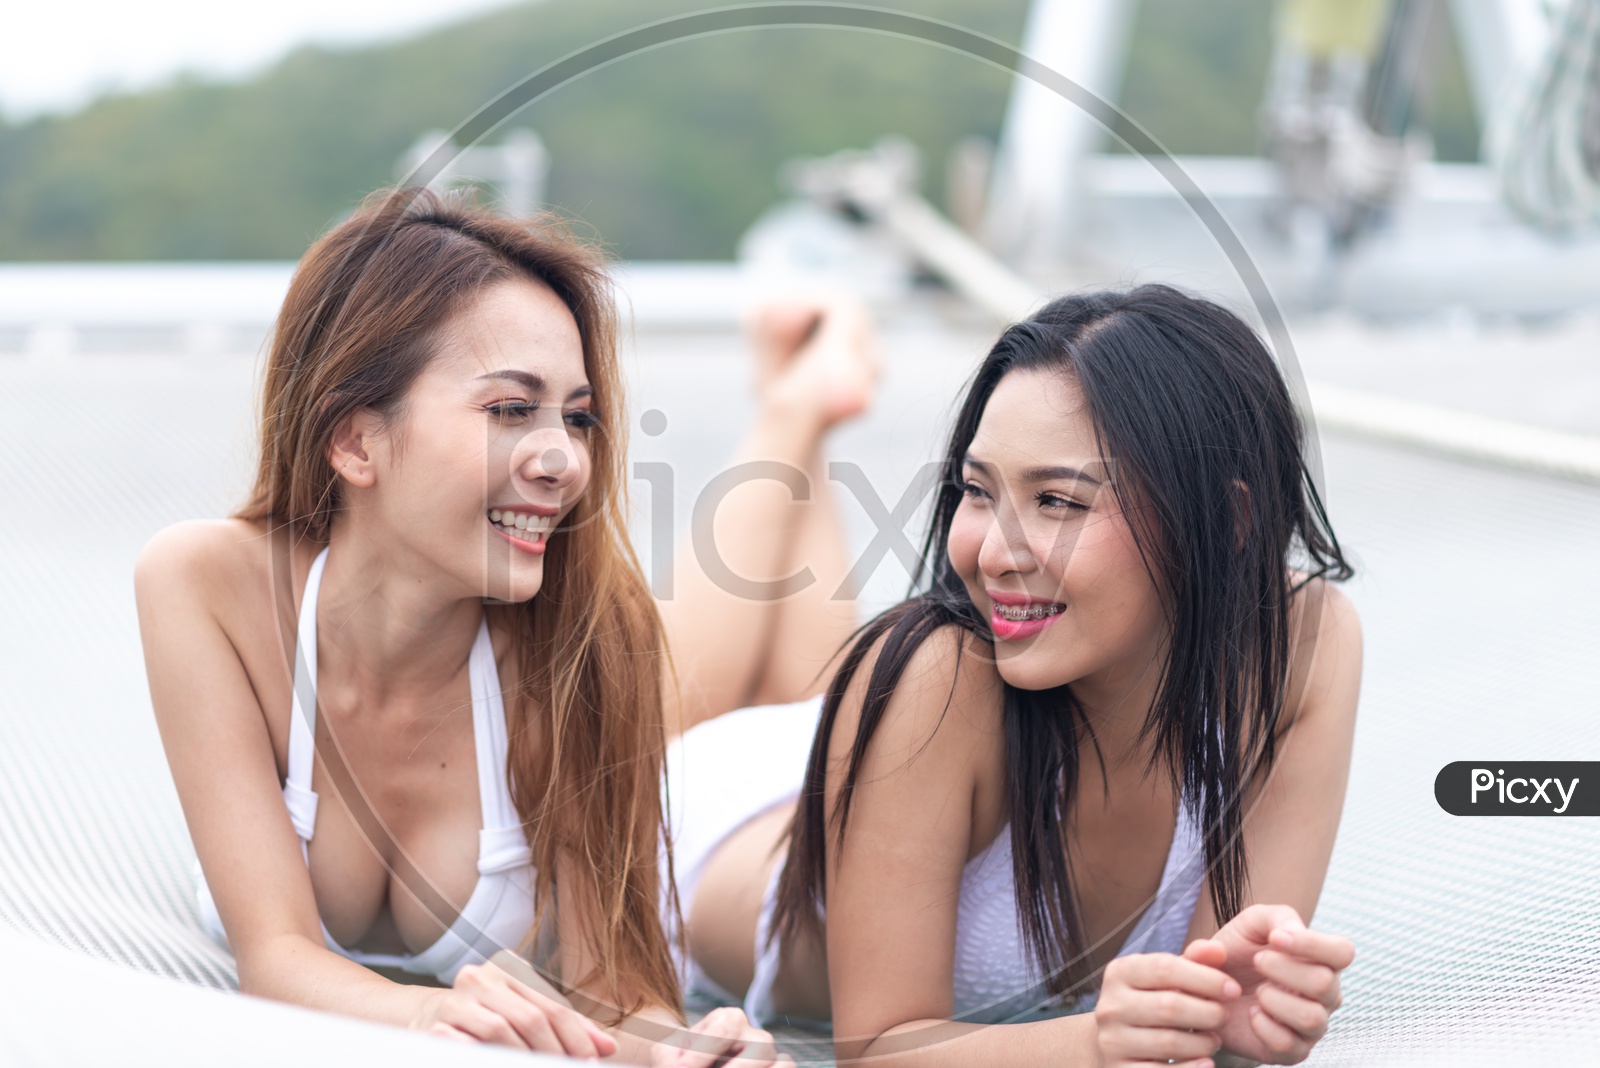 Beautiful girls in white bikini on a yacht in Sea